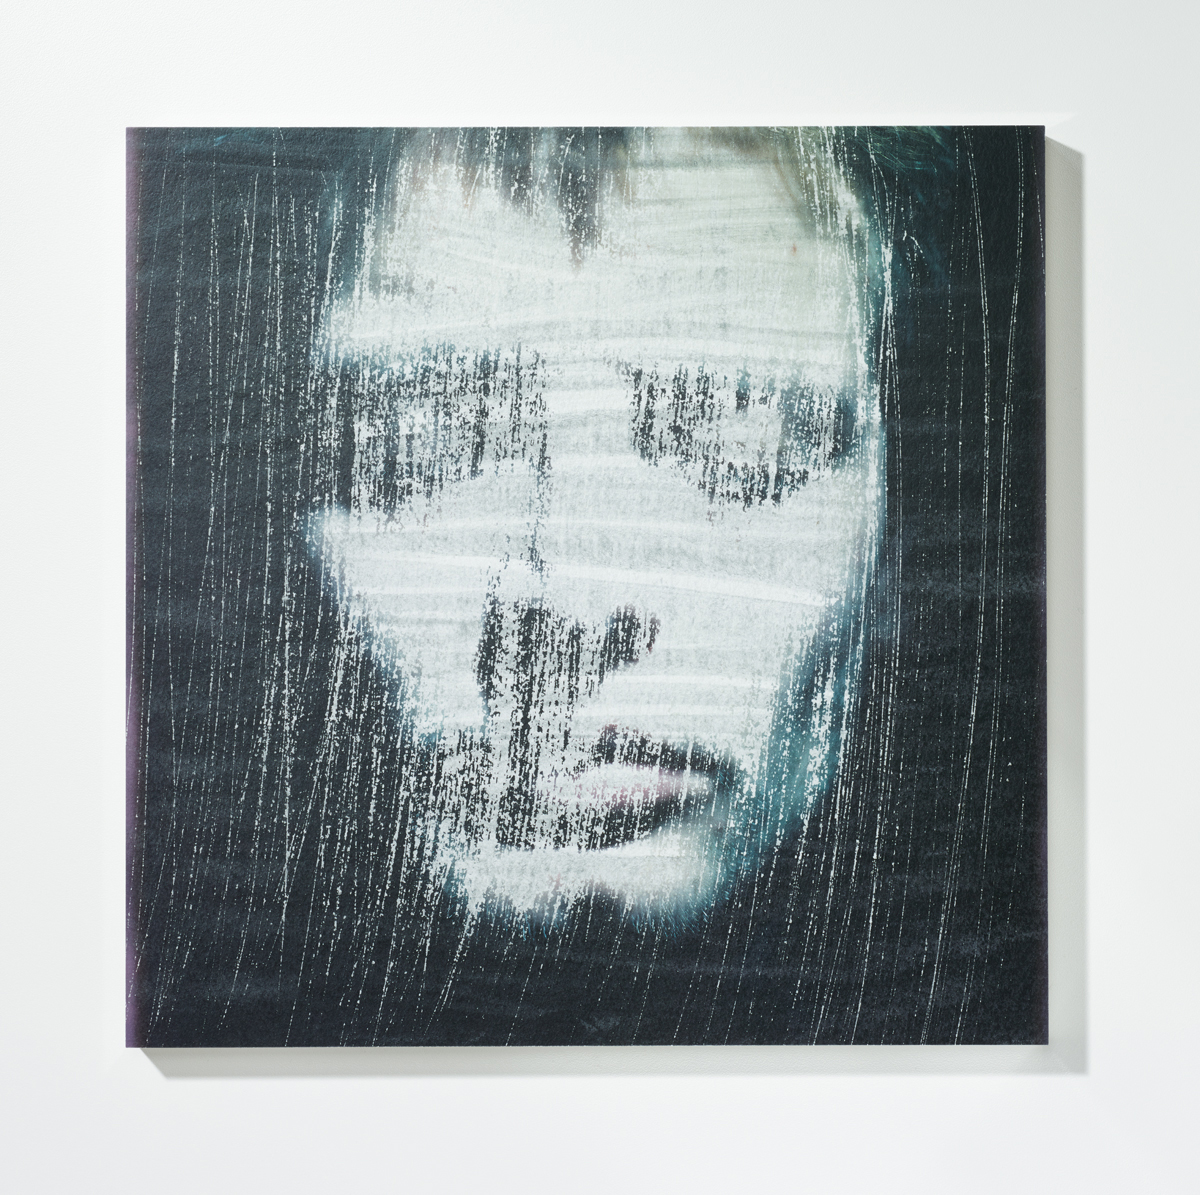 Löschung 4, 201630 x 30 cmPigmentprint, gelöscht, gefirnisst, kaschiert auf Acrylglas